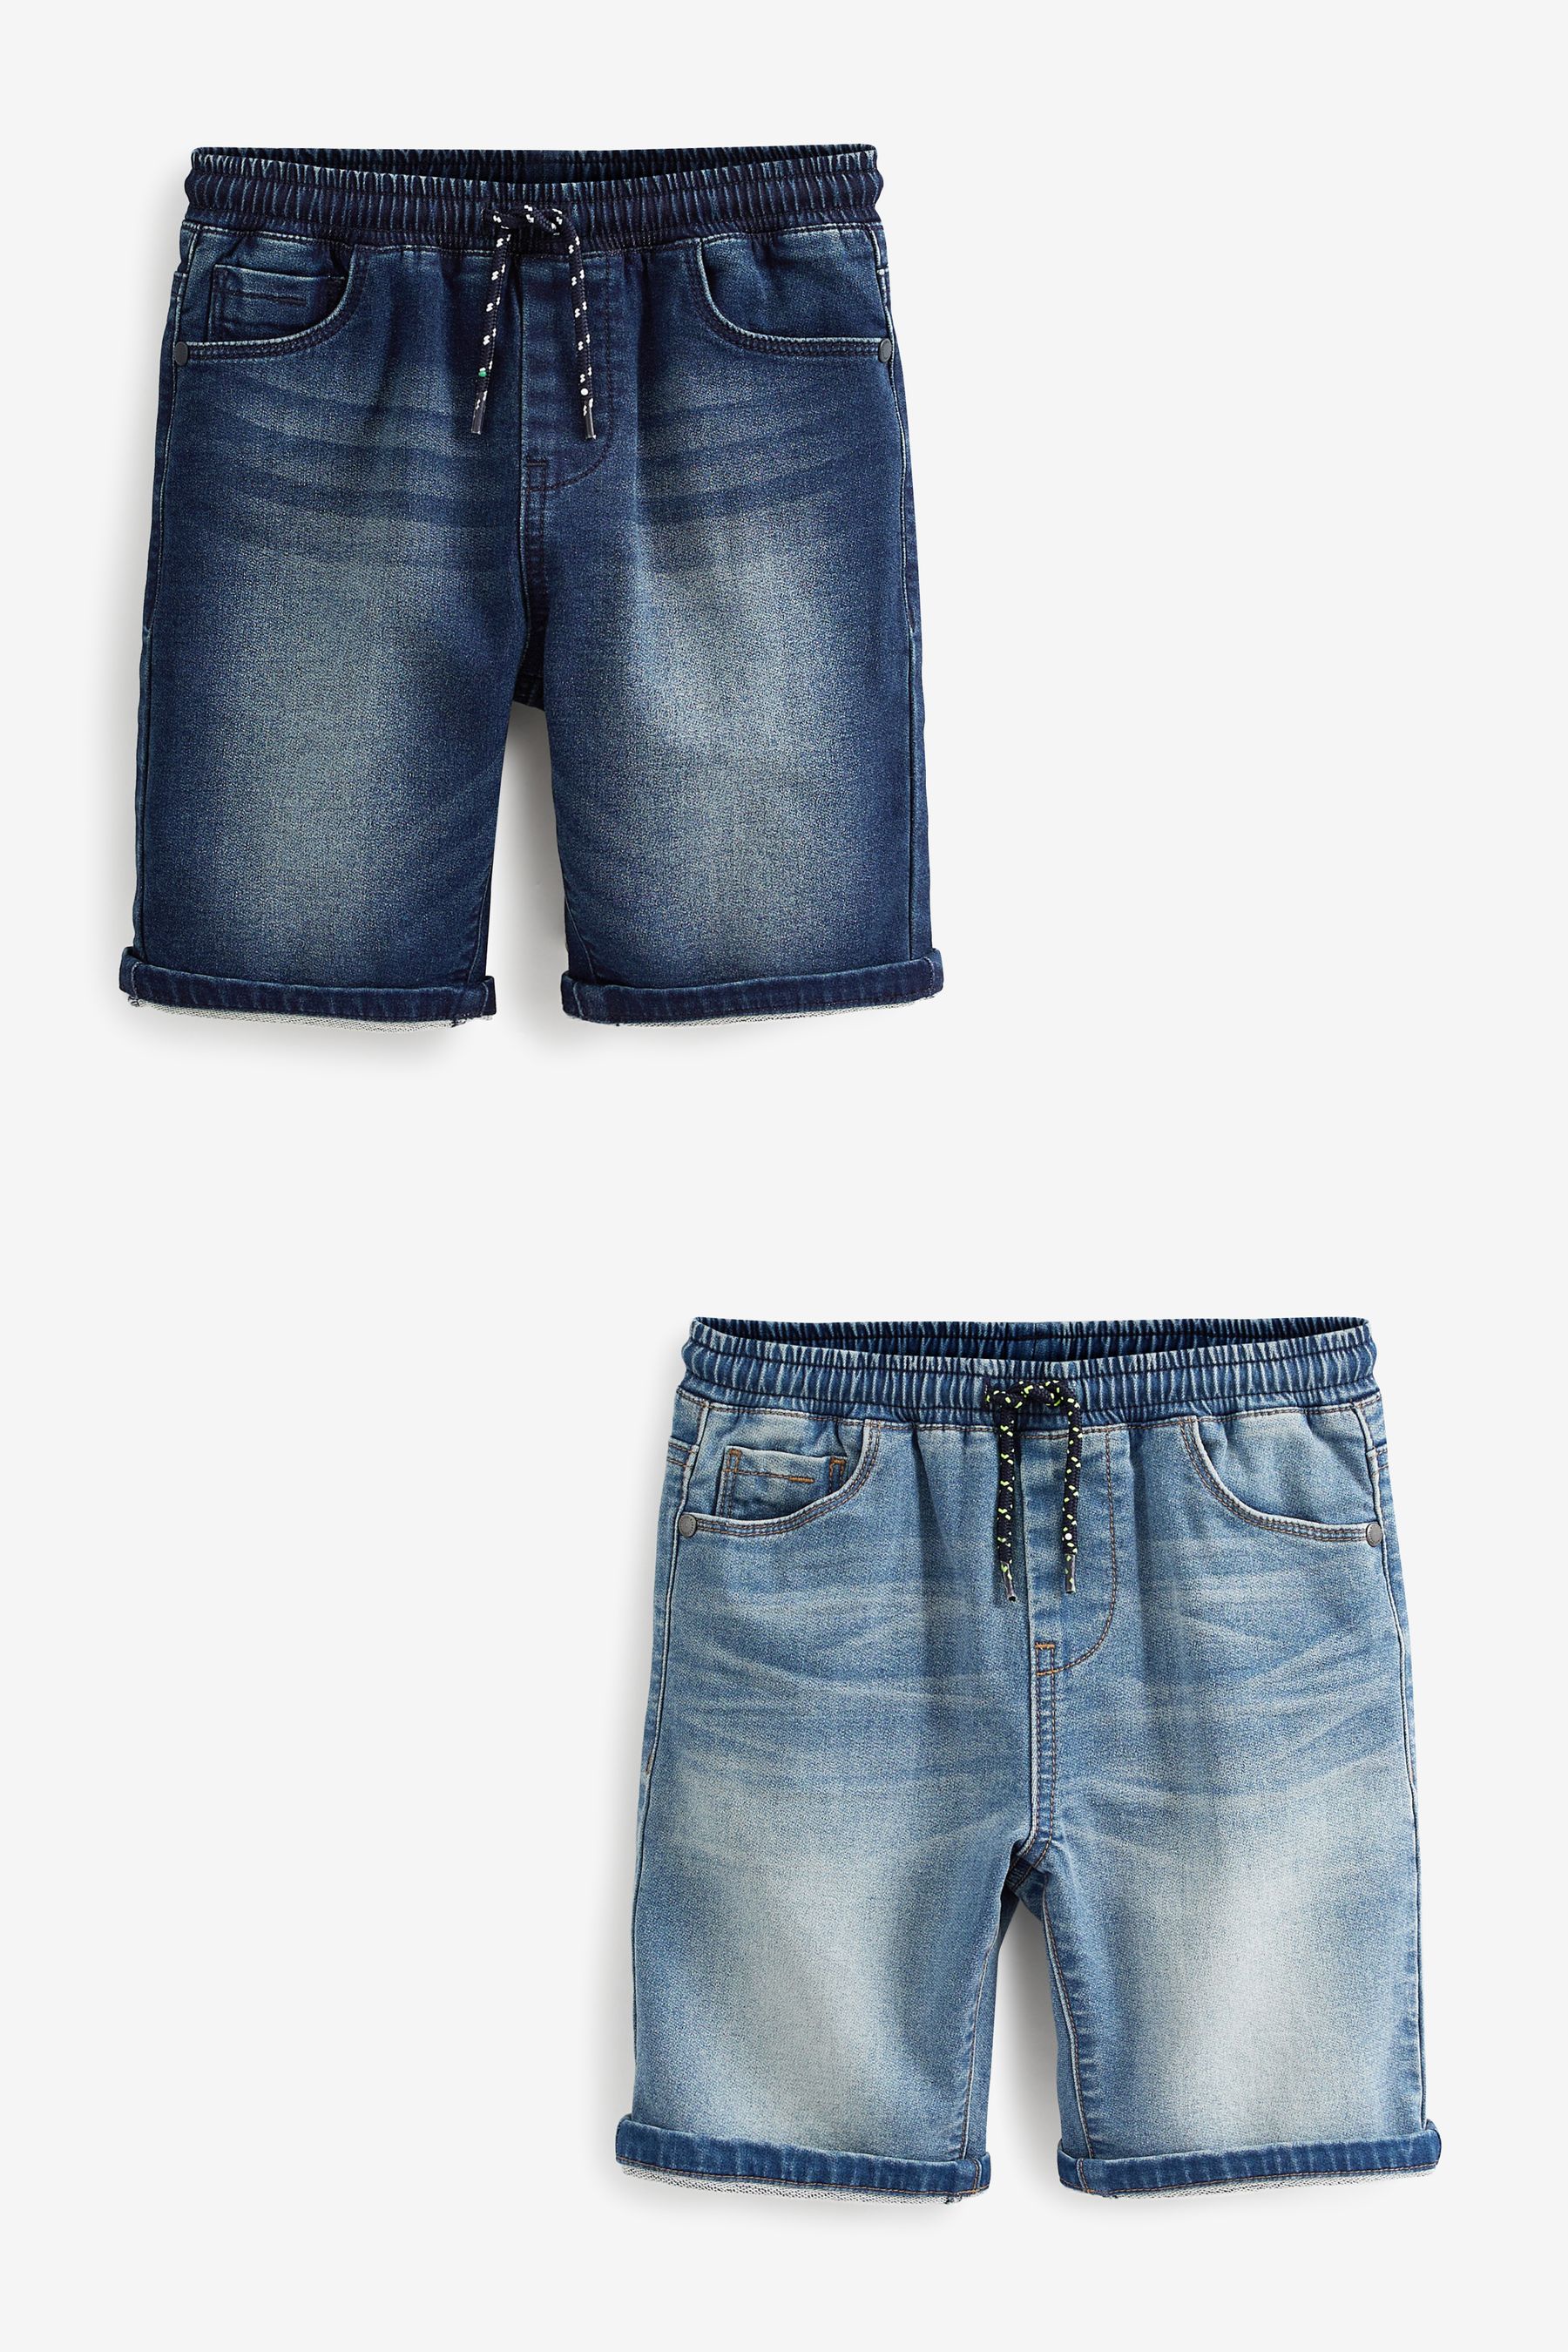 Комплект из 2 пар джинсовых шорт из джерси Next, синий комплект из трех джинсовых шорт h